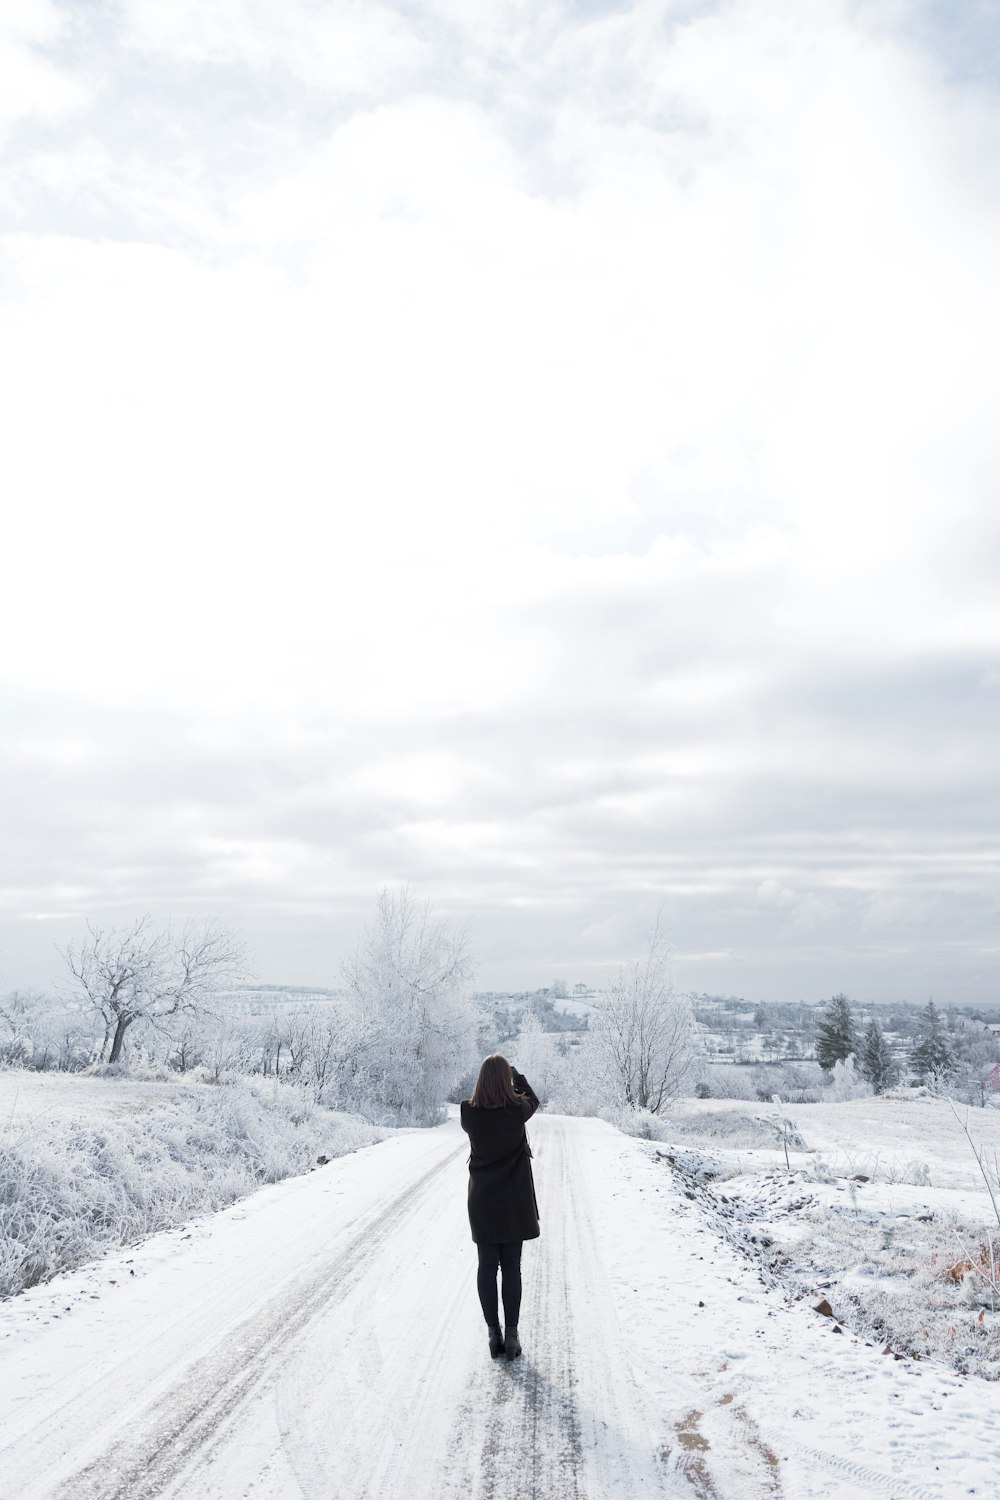 Persona con chaqueta negra de pie en el suelo cubierto de nieve durante el día